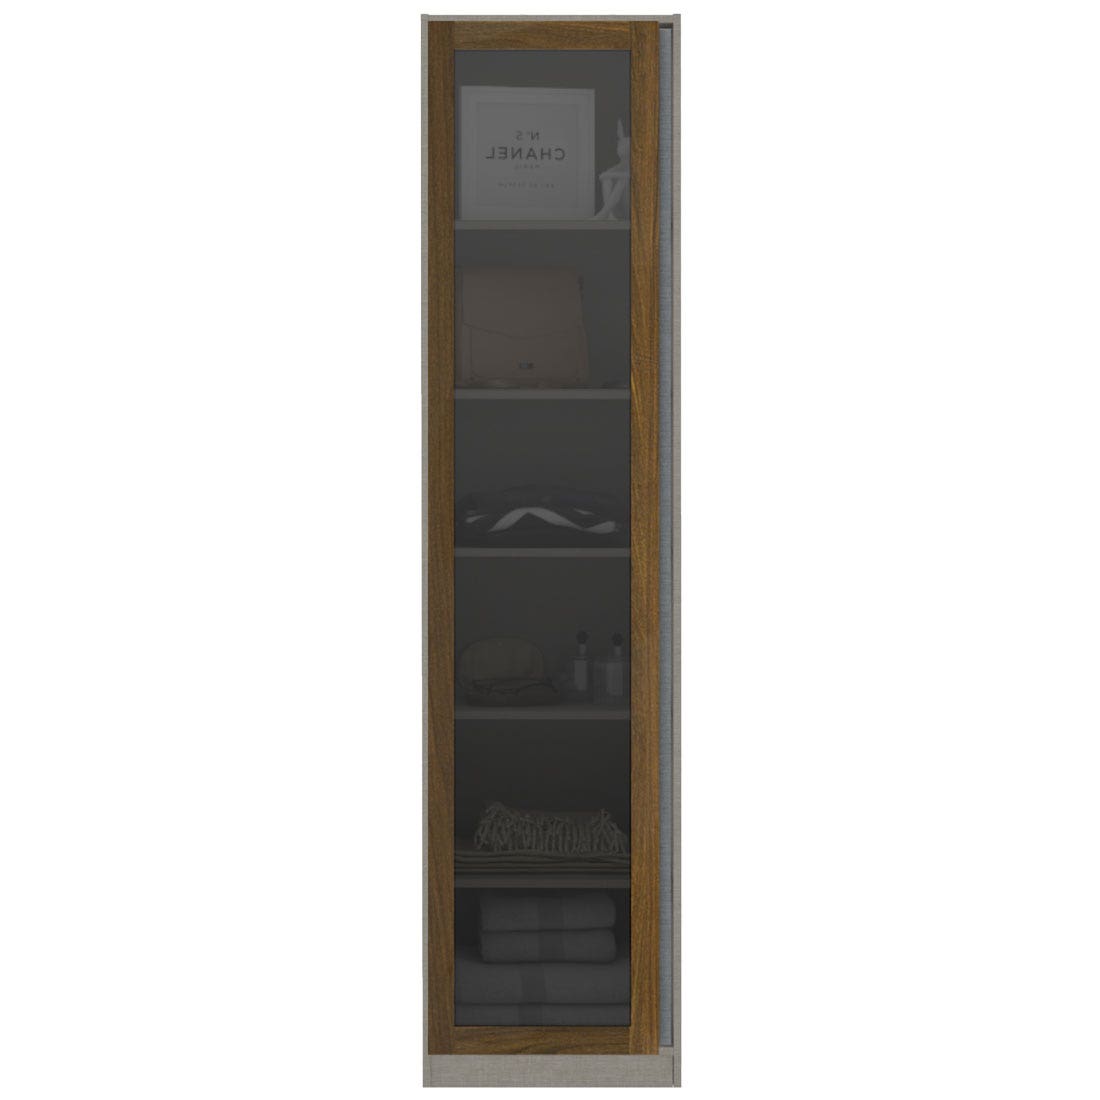 ตู้เสื้อผ้าชั้นเก็บของ (หน้าบานเปิดซ้าย) ขนาด 50 ซม. รุ่น Blox สีไม้เข้ม&กระจกชาดำ1